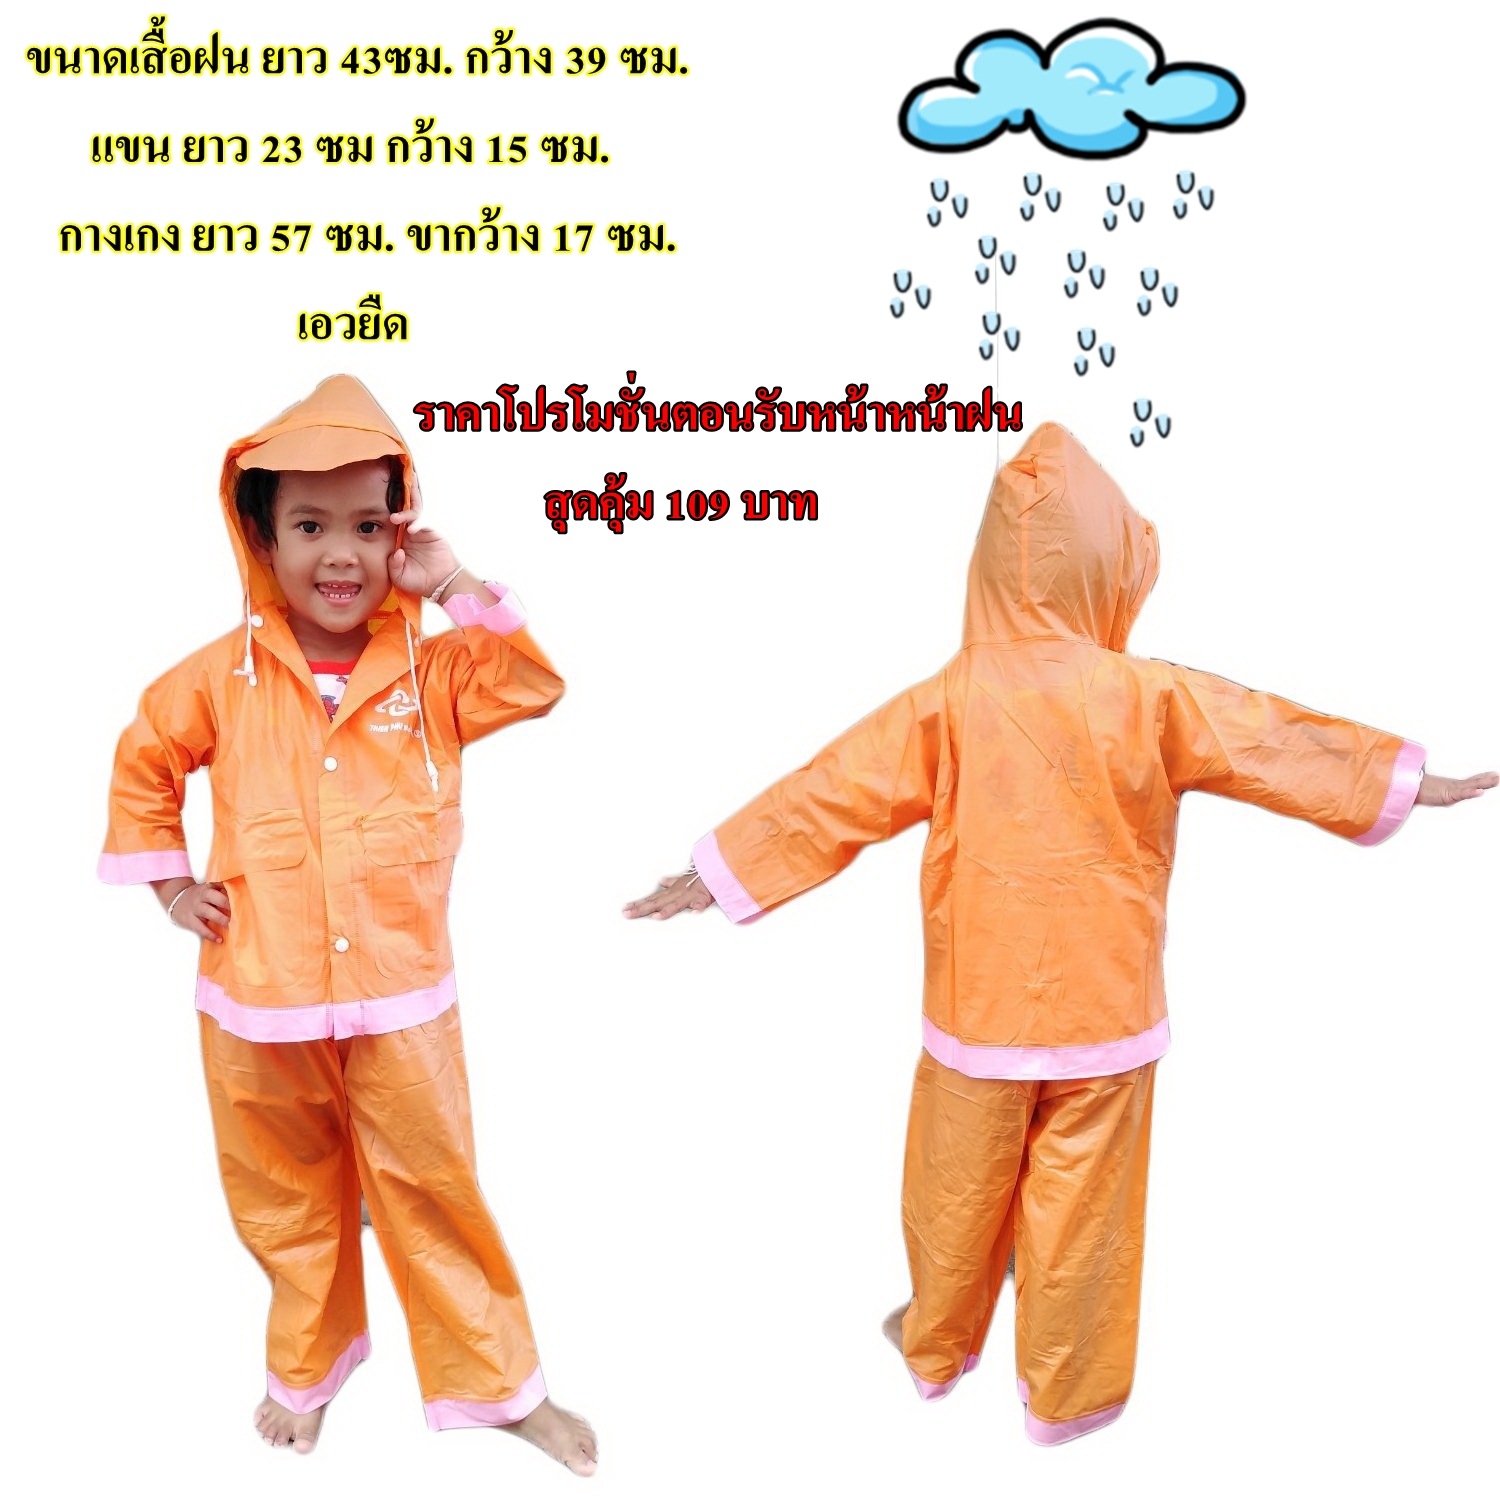 ใหม่ล่าสุด  ชุดกันฝนเด็ก​ เบอร์2 เสื้อกันฝน​ เสื้อกันฝนเด็ก​ แบบครบเช็ต กางเกง+เสื้อฝน มีหลายสีให้เลือก ประมาณเด็ก 2ขวบ ถึง 4 ขวบ